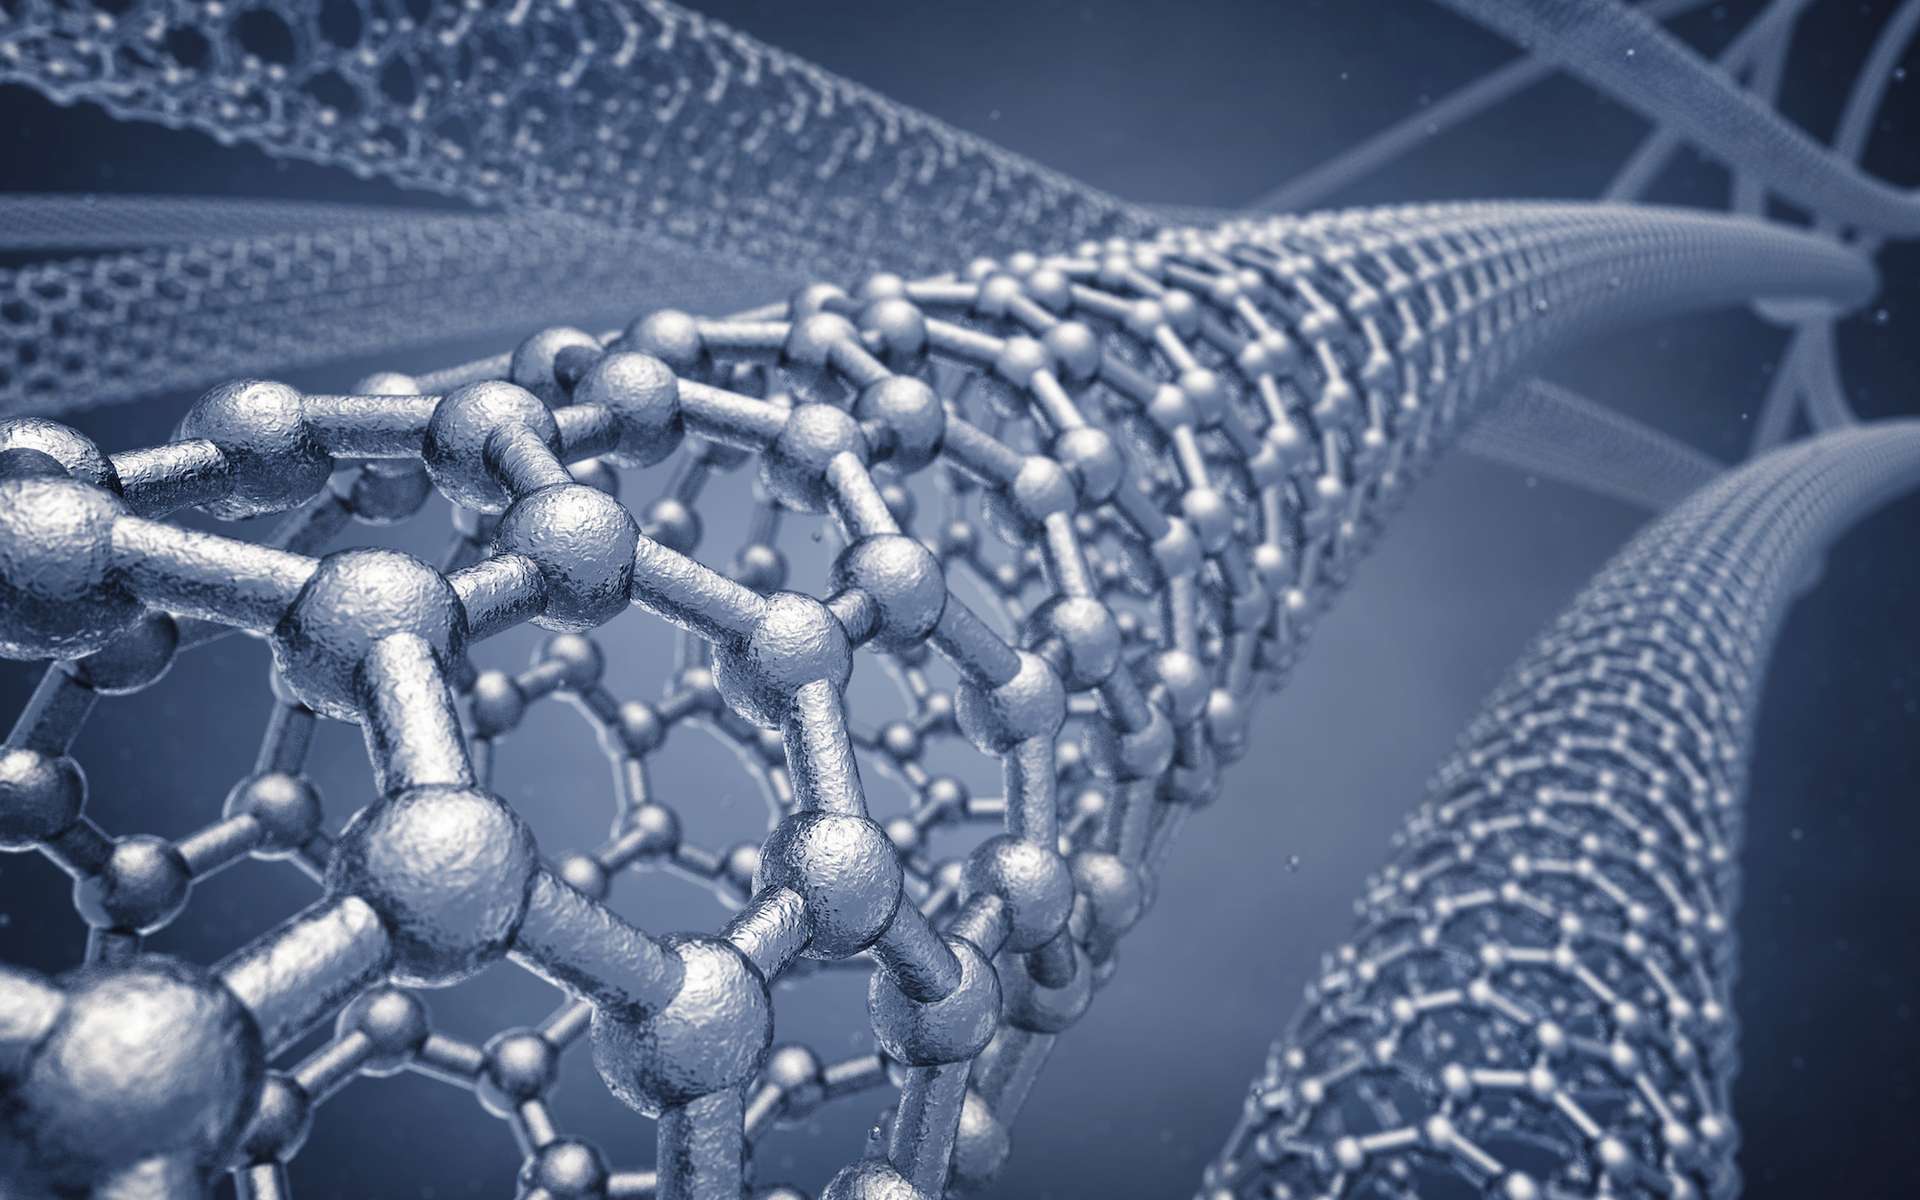 En contrôlant la création de nanorouleaux d’oxyde de graphène, des chercheurs américains espèrent développer des membranes de filtration d’eau légères et bon marché. © nobeastsofierce, Shutterstock